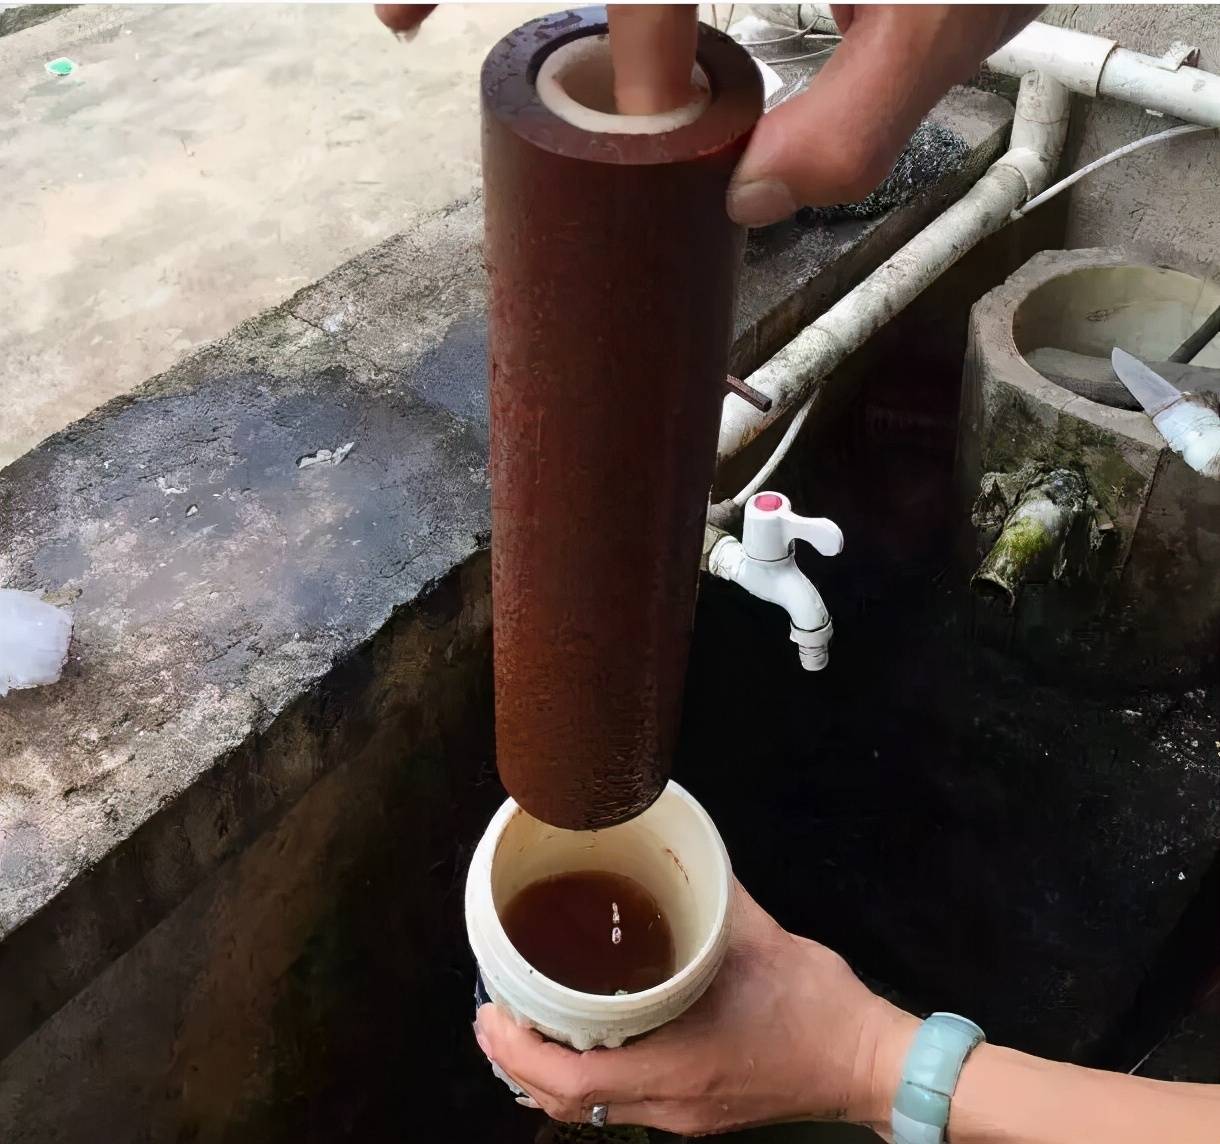 净水器的滤芯是帮忙过滤自来水,要保证持续净水效果,防止二次污染